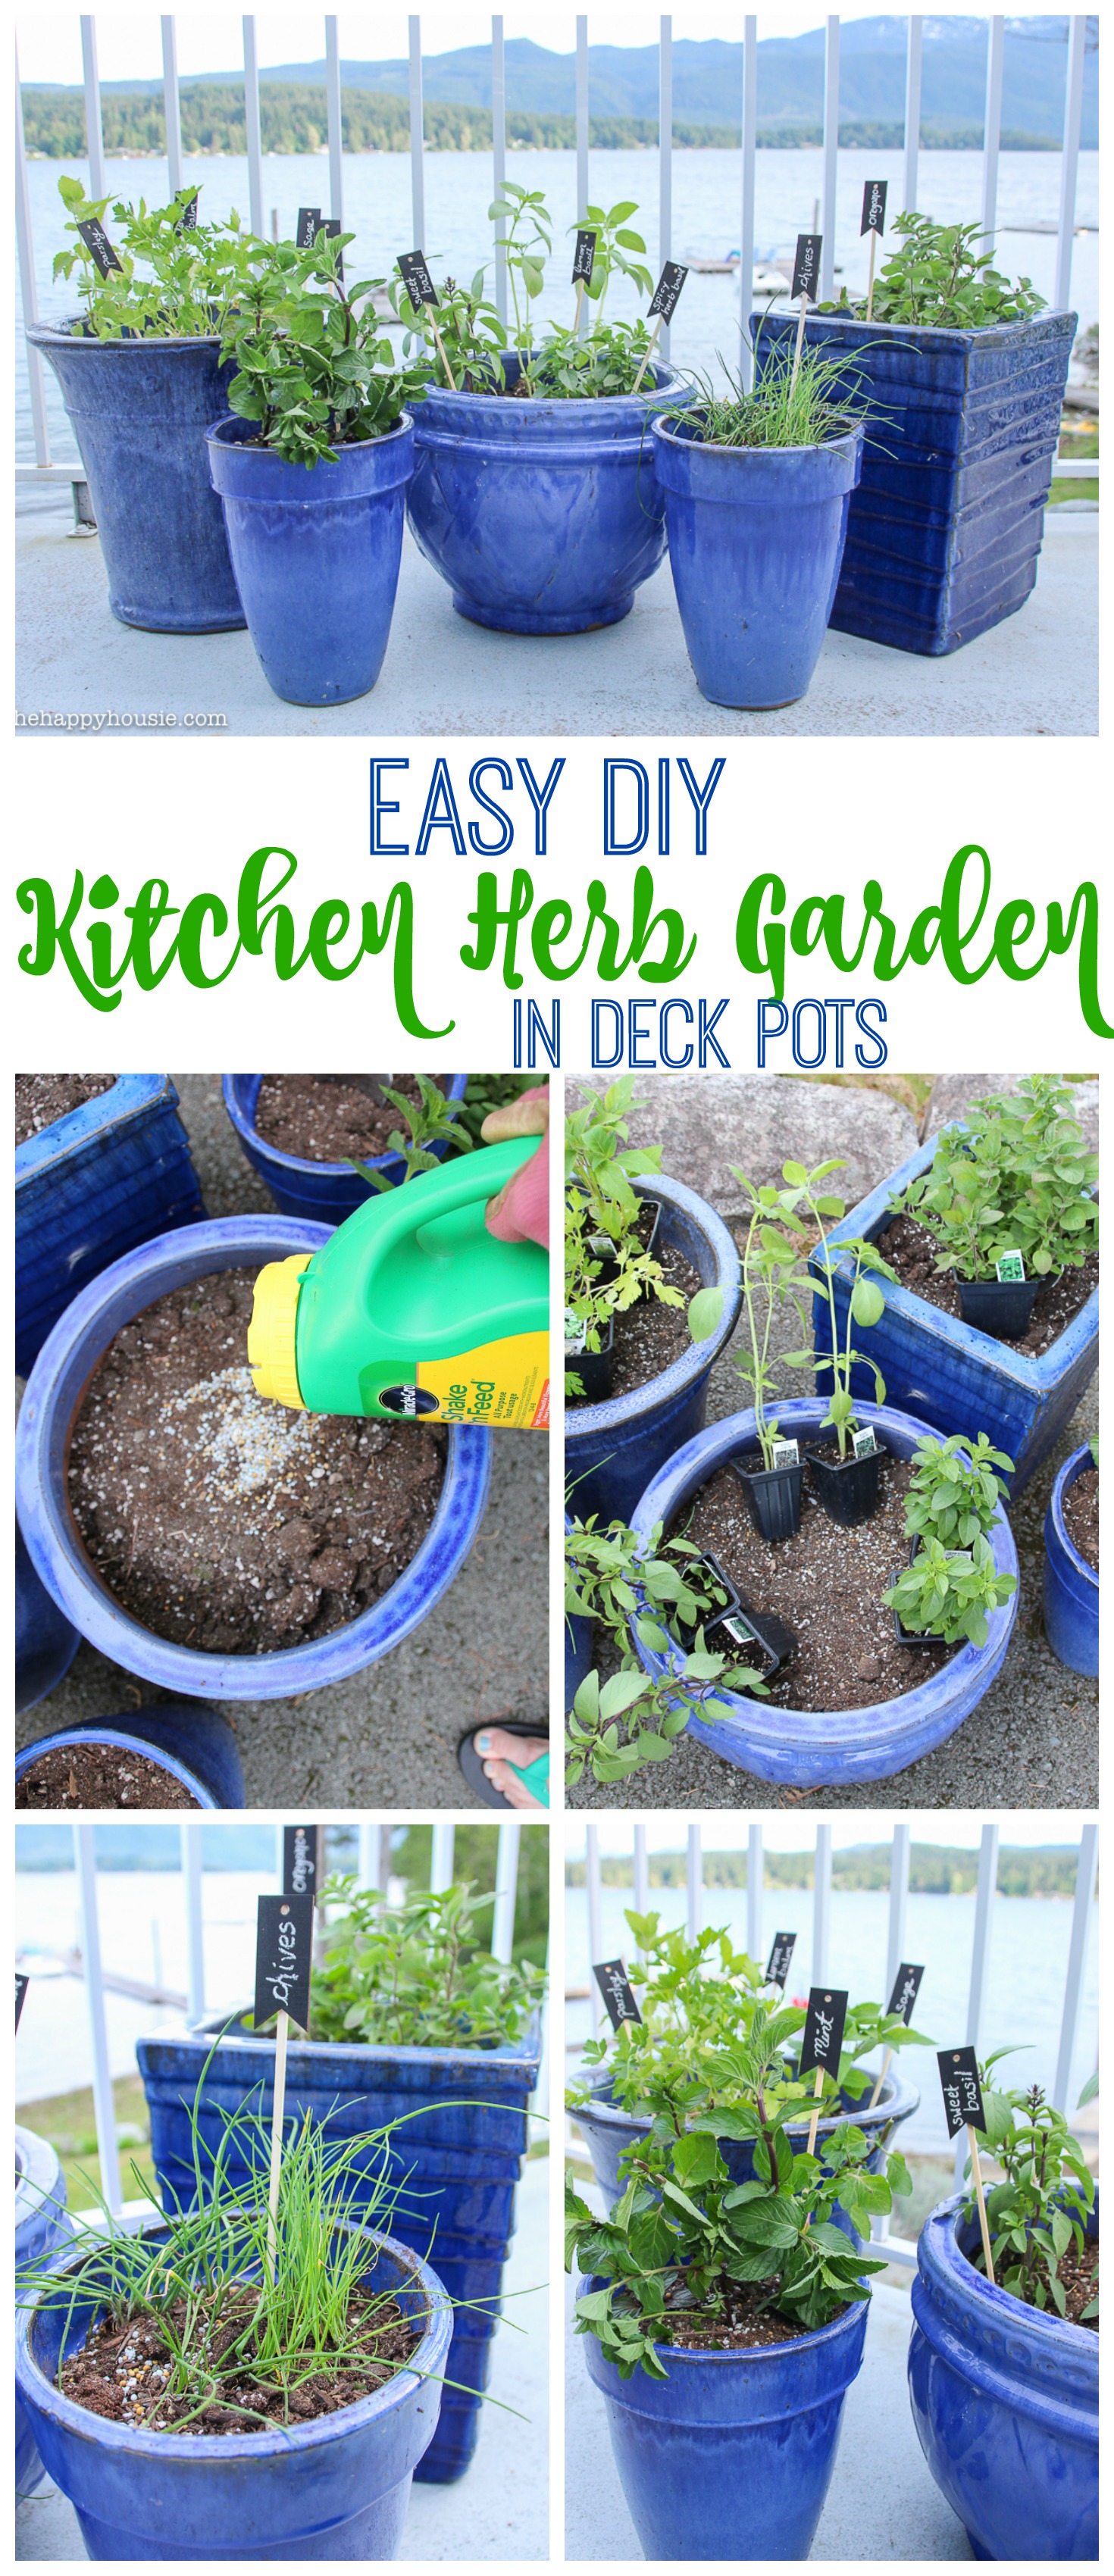 Easy DIY Kitchen Herb Garden in Deck Pots tips at the happy housie graphic.